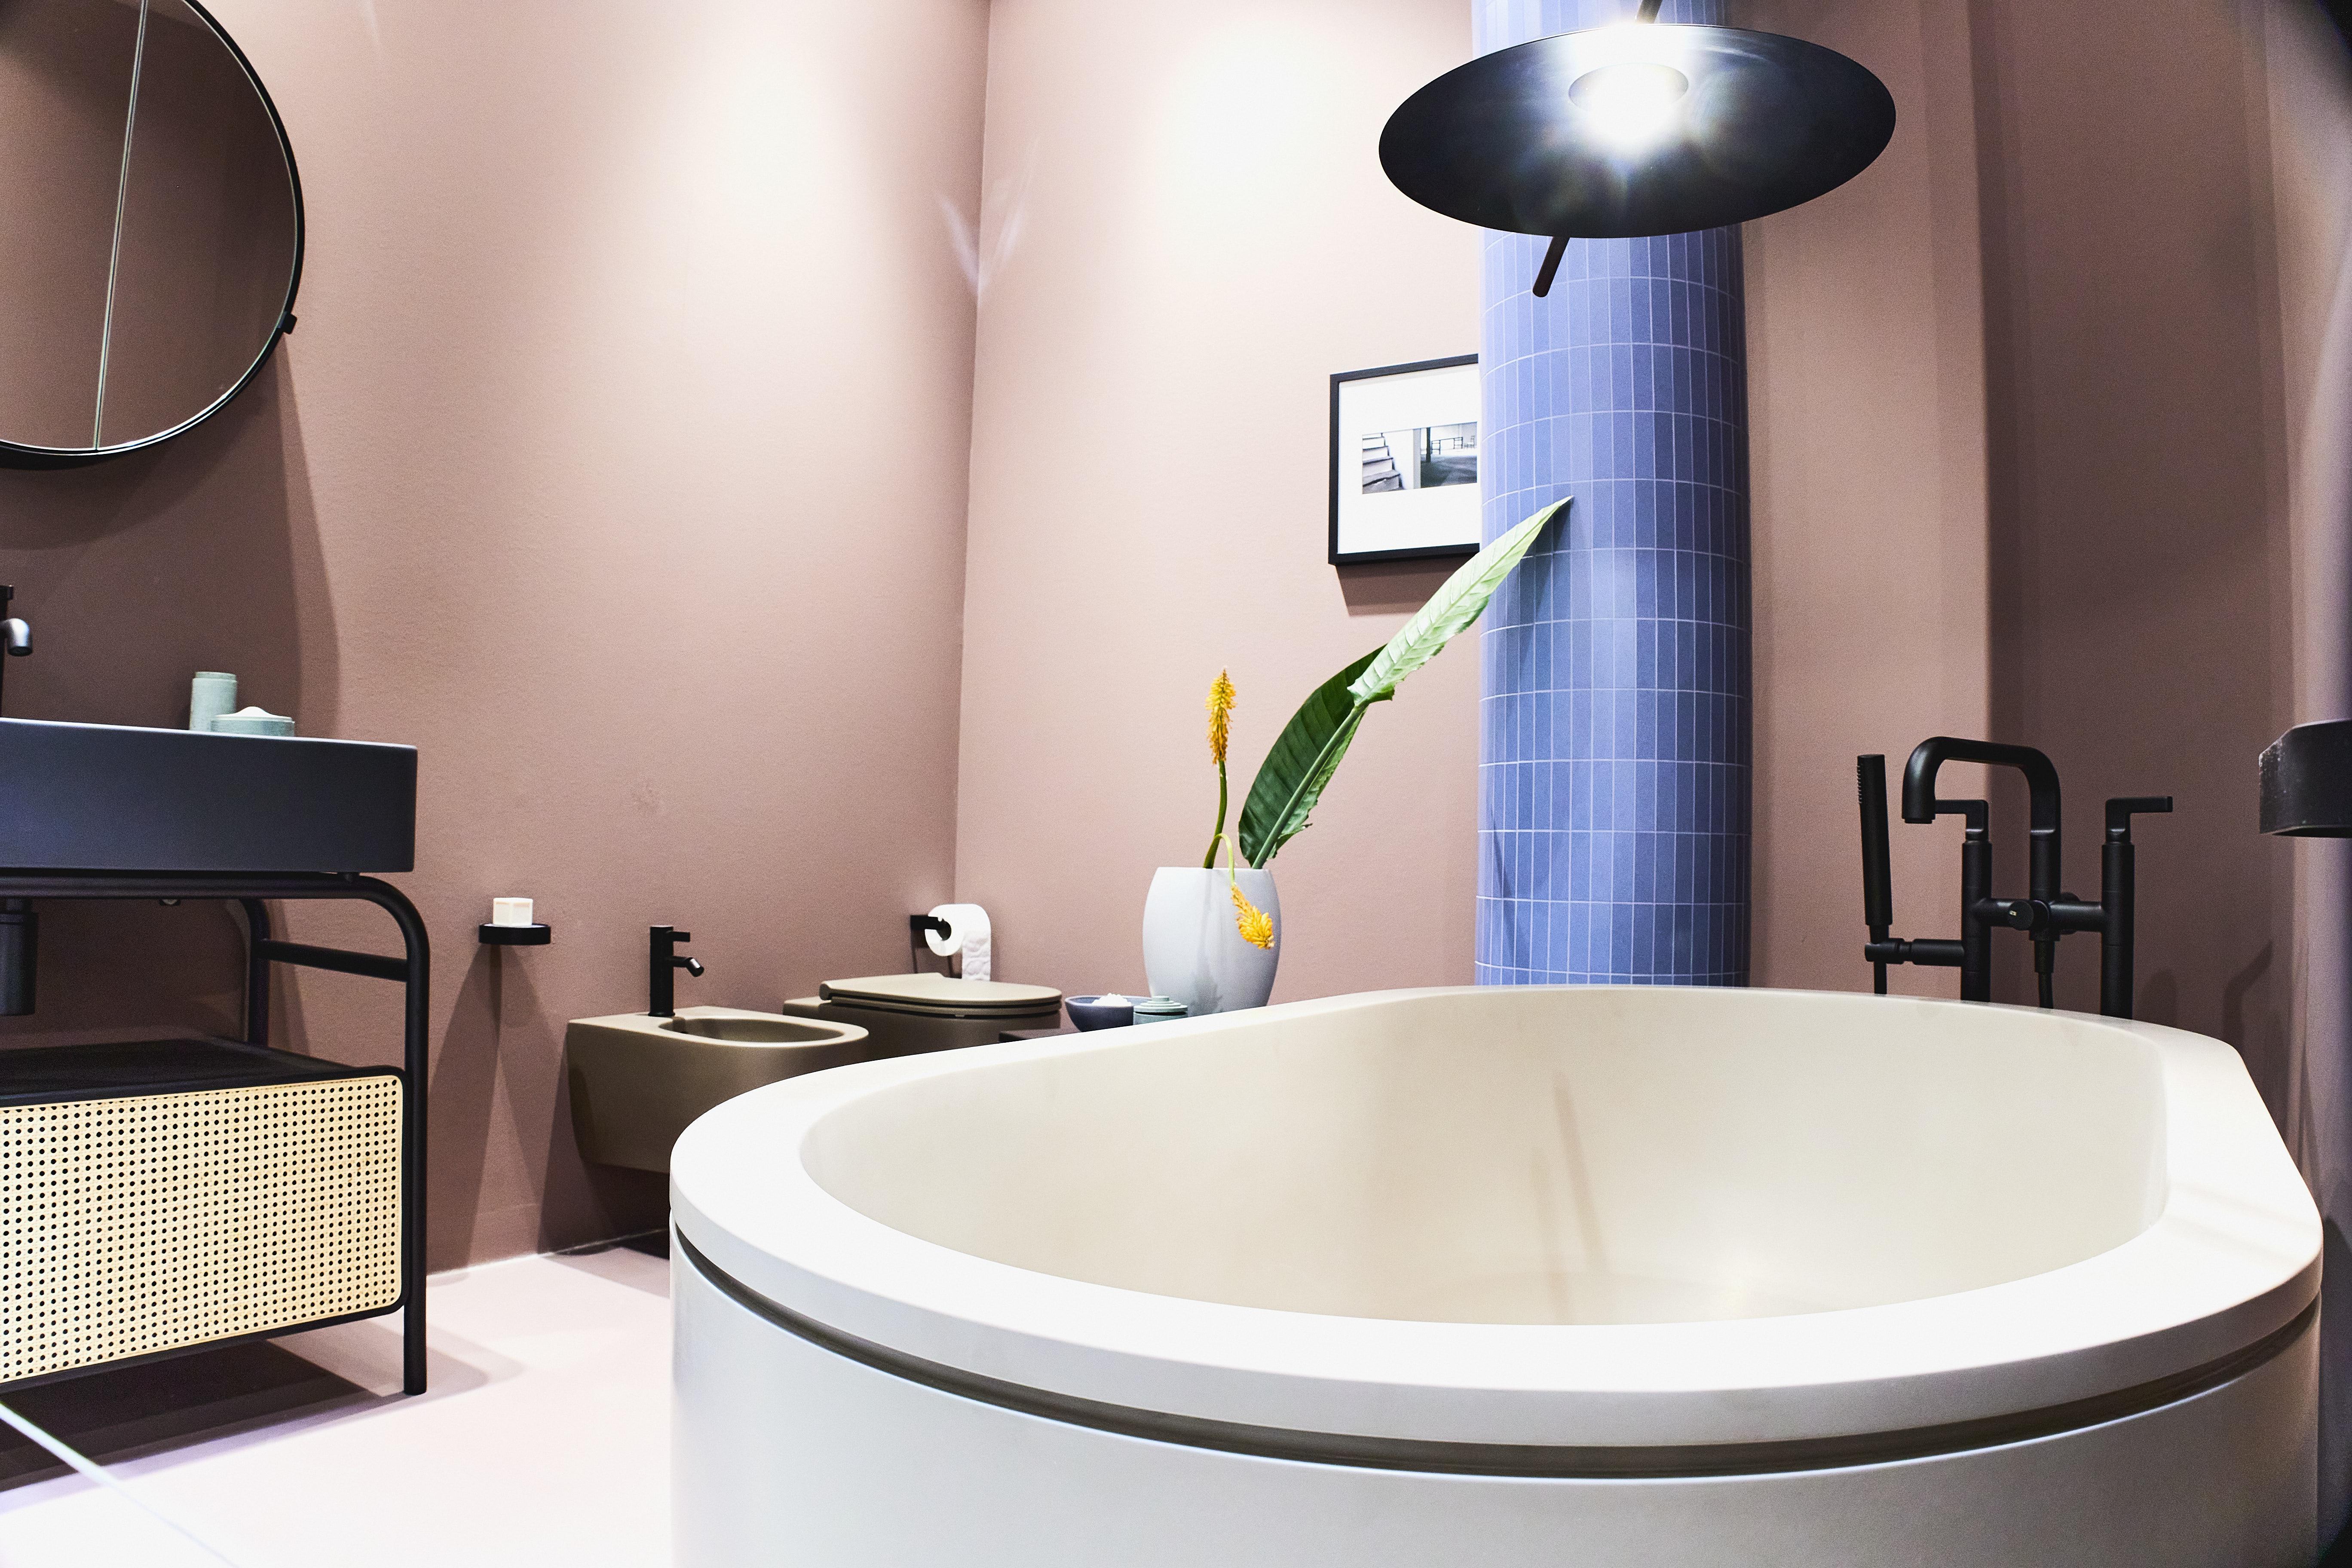 SALONE DEL MOBILE Milano nieoczywiste kolory piękne formy wanna wolnostojąca i ciekawe meble do nowy design łazienki modne wnętre 2022